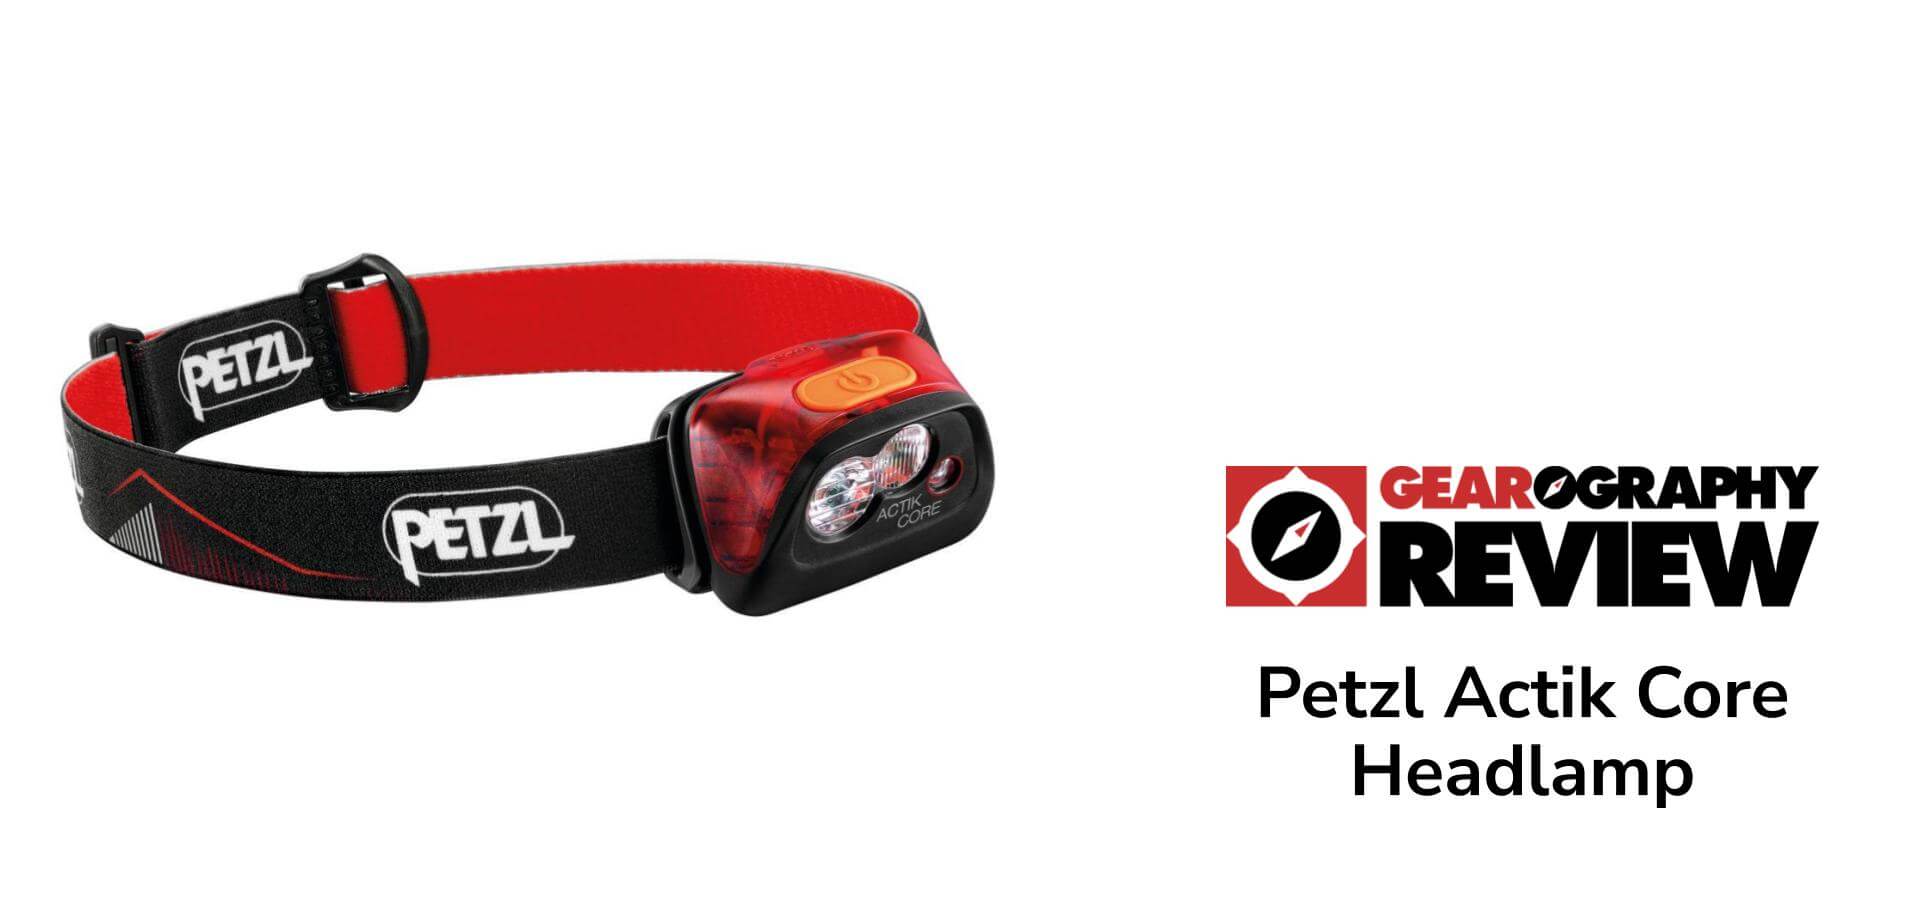 Petzl Actik Core Headlamp Review